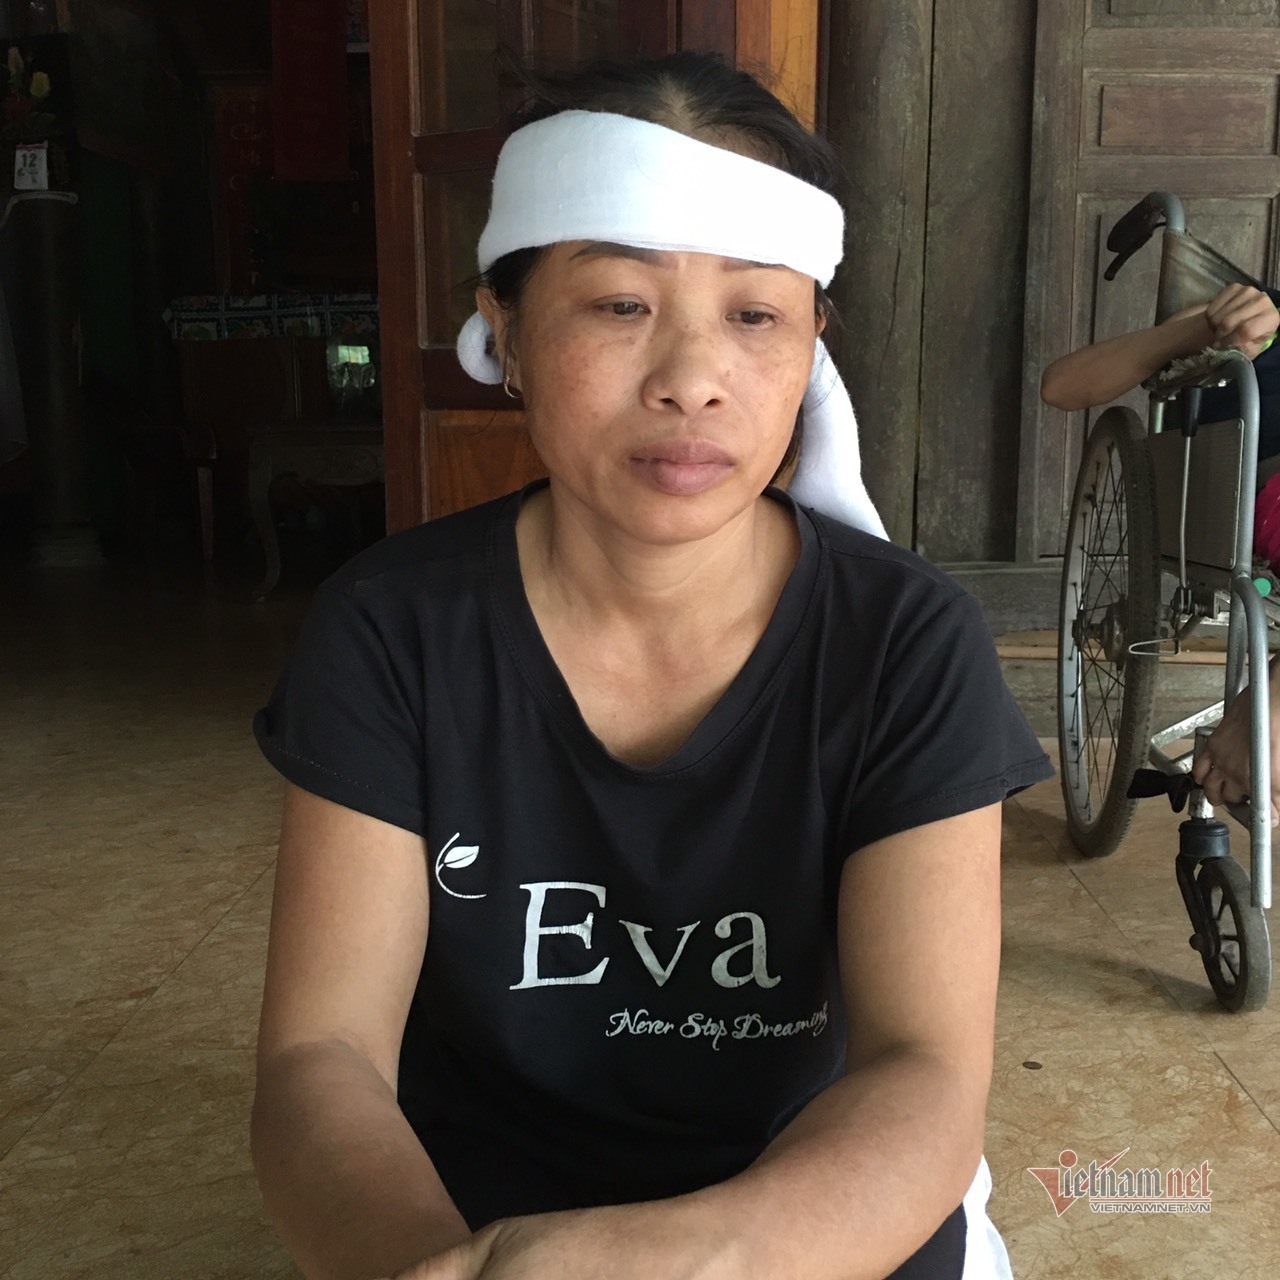 Chồng tử nạn đột ngột, cô giáo mầm non ở Hà Tĩnh lâm cảnh bi đát